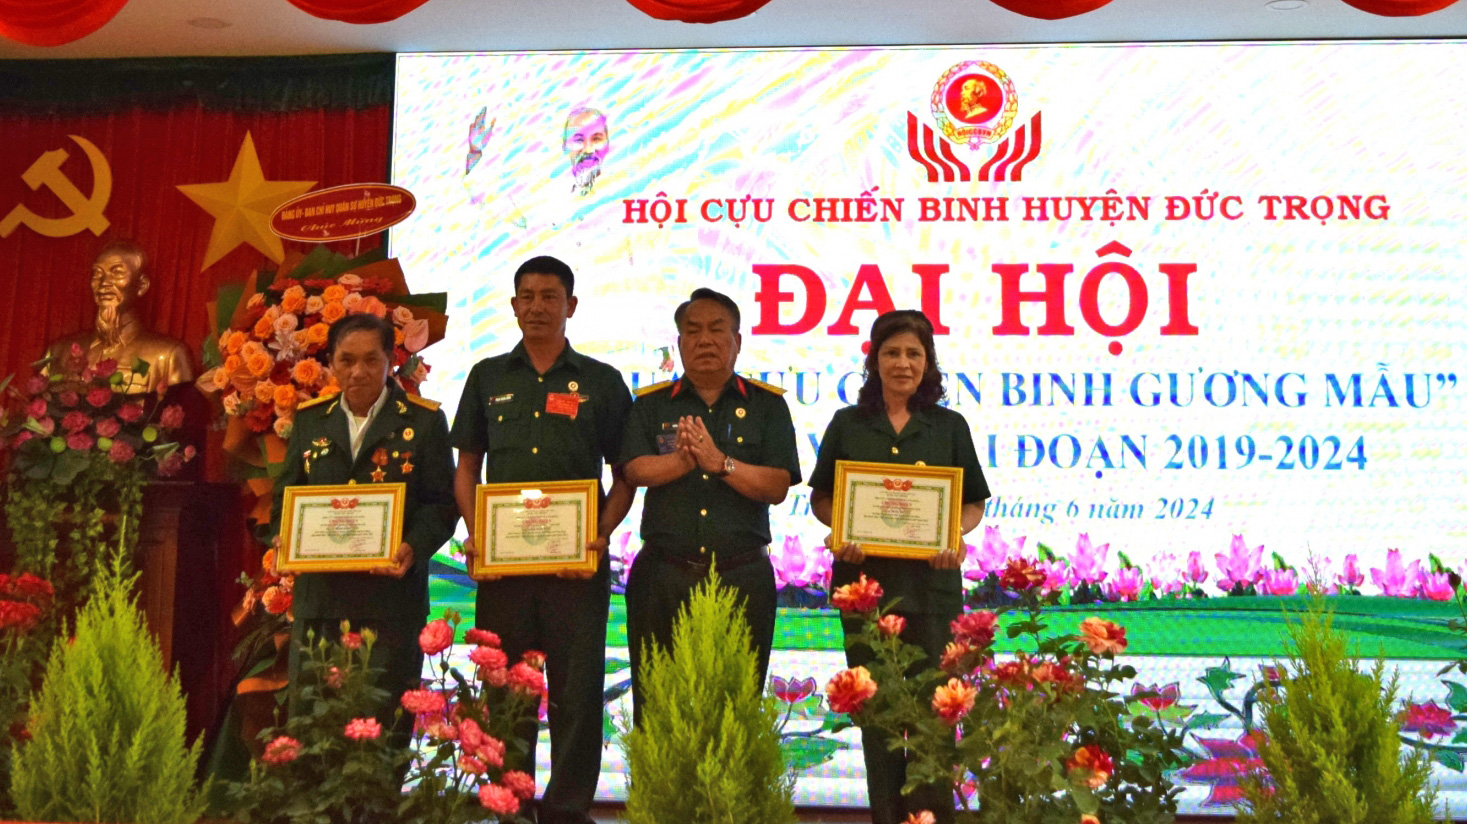 Đồng chí Dương Công Hiệp  - Phó Chủ tịch Hội CCB tỉnh, trao giấy chứng nhận Hội Cựu chiến binh sản xuất, kinh doanh giỏi của Hội cựu chiến binh tỉnh cho các cá nhân